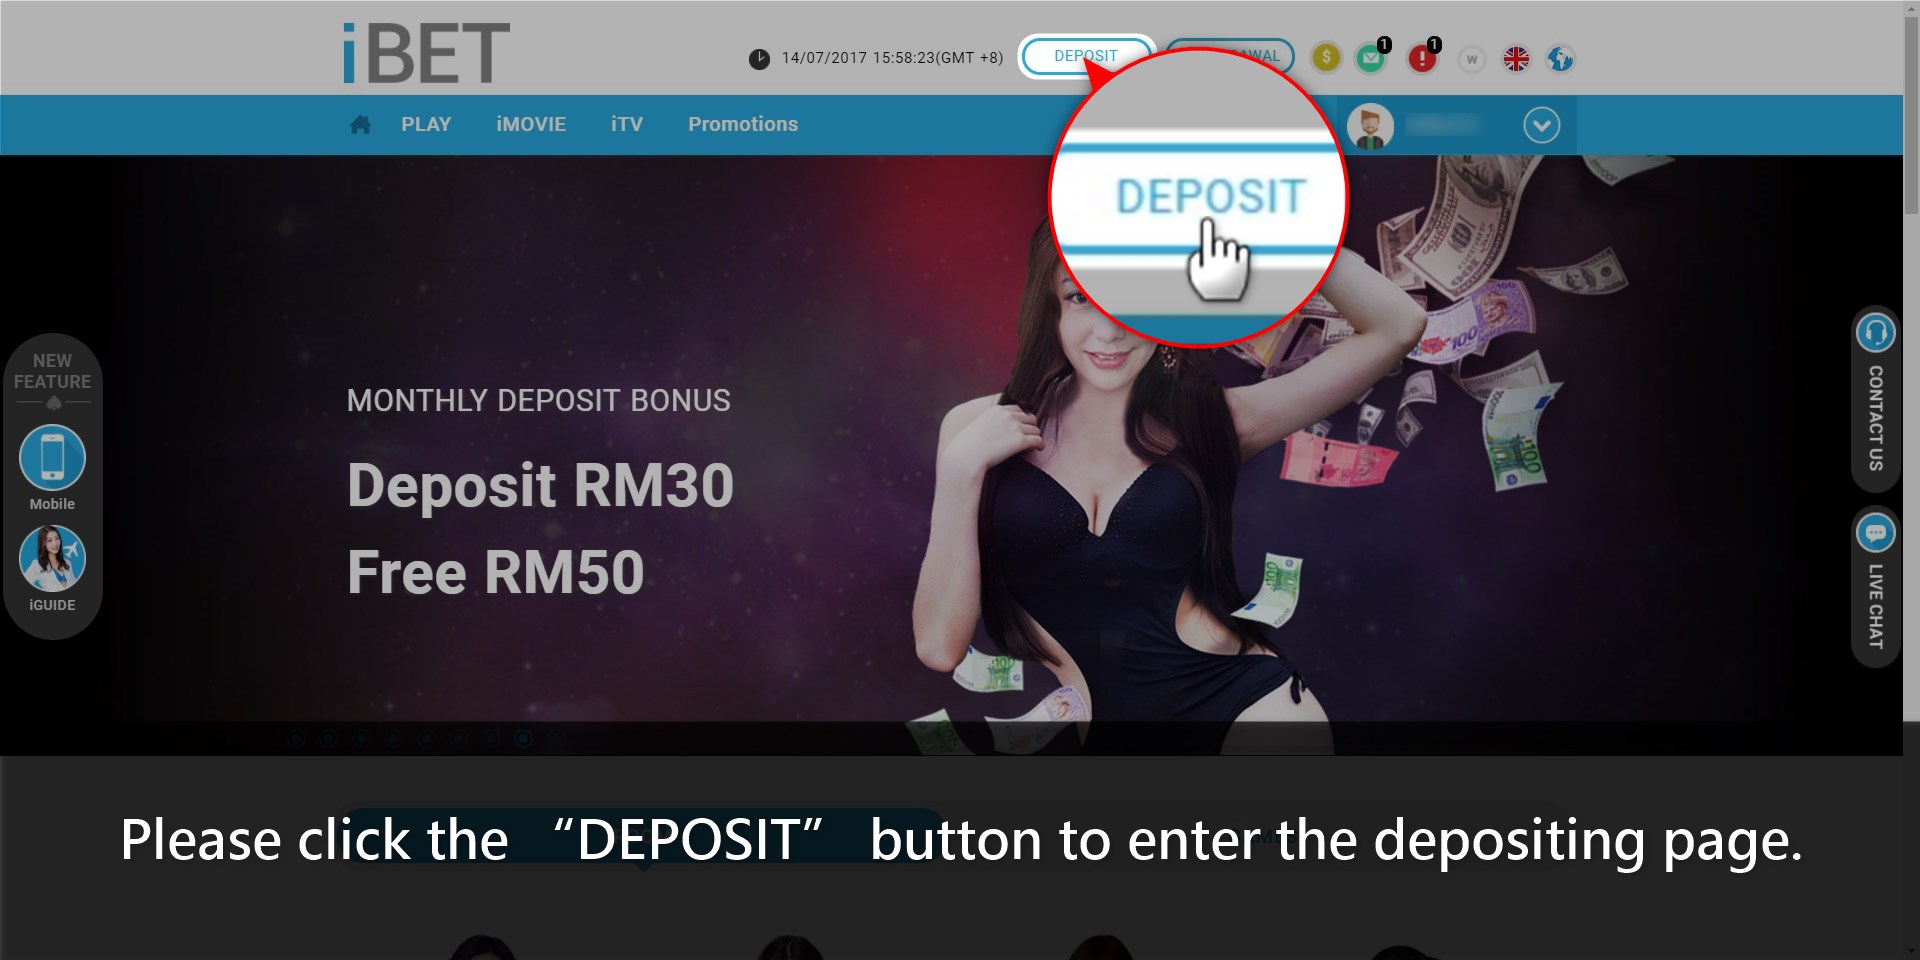 Casino588 teach iBET Extra 100% Deposit Bonus